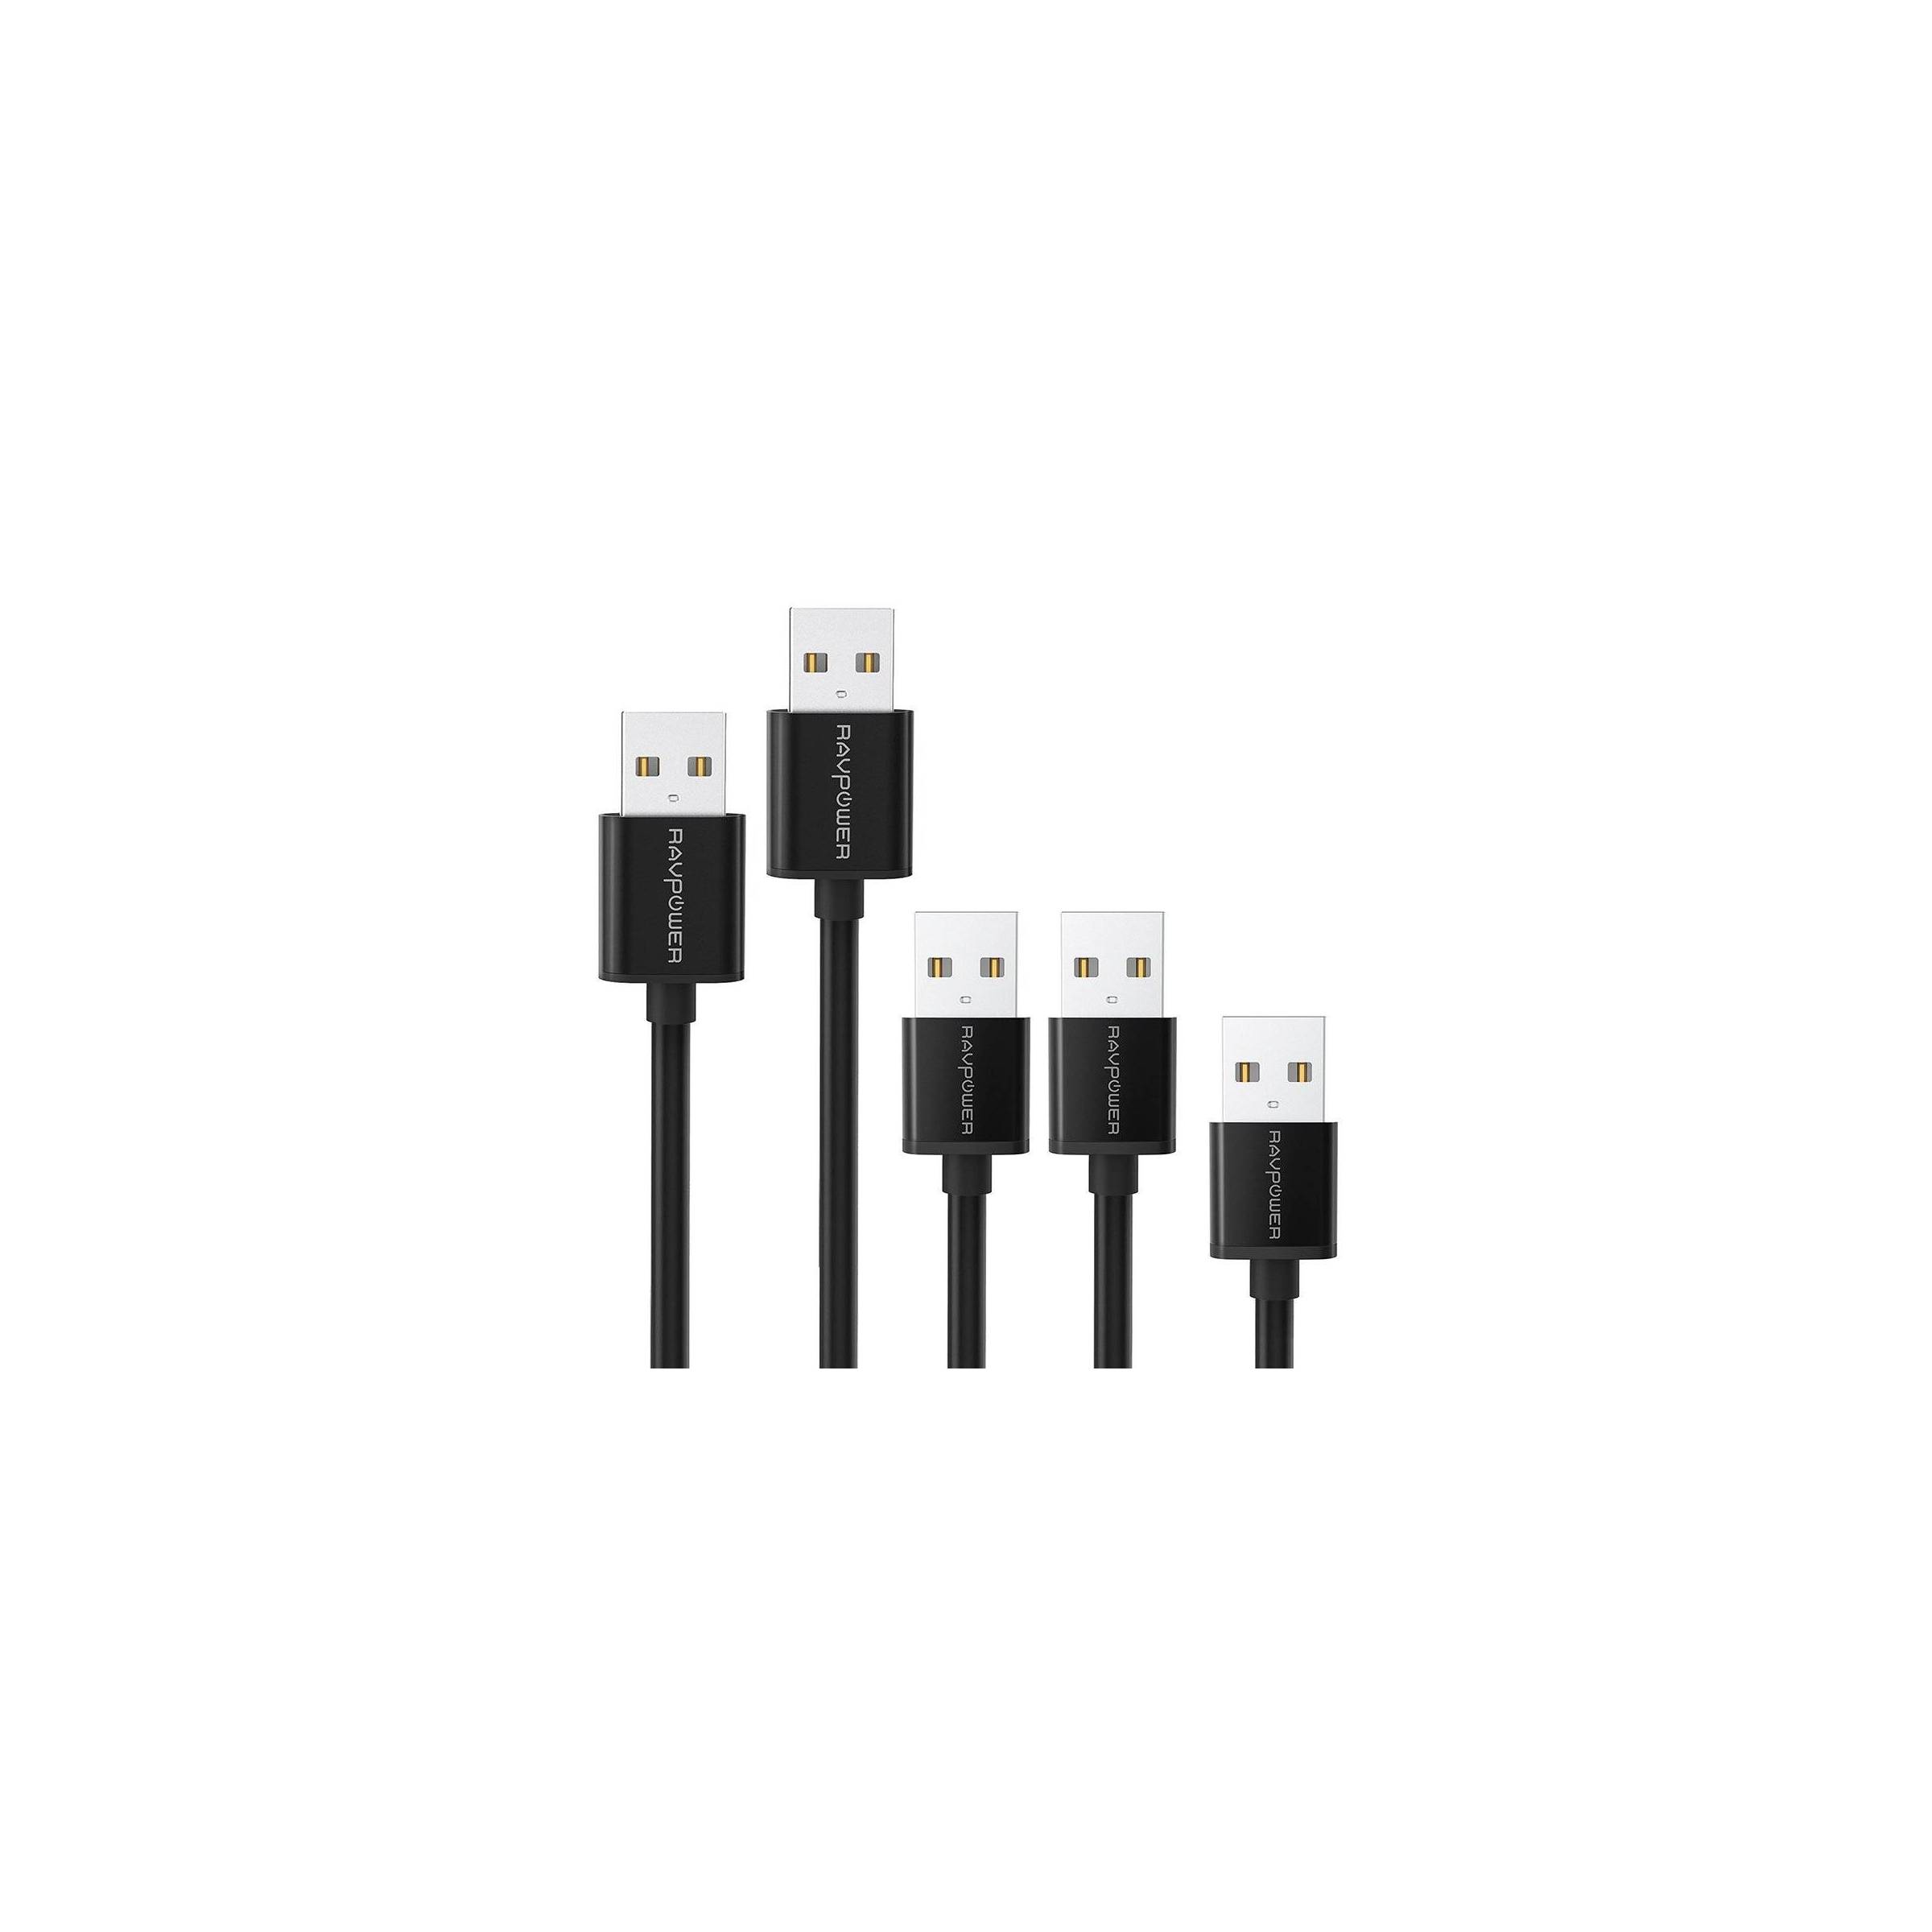 Bilde av Ravpower 5 X Usb 2.0 Til Micro Usb Cables (0.3 M + 2 X 0.9 M + 1.8 M + 3.0 M), Black